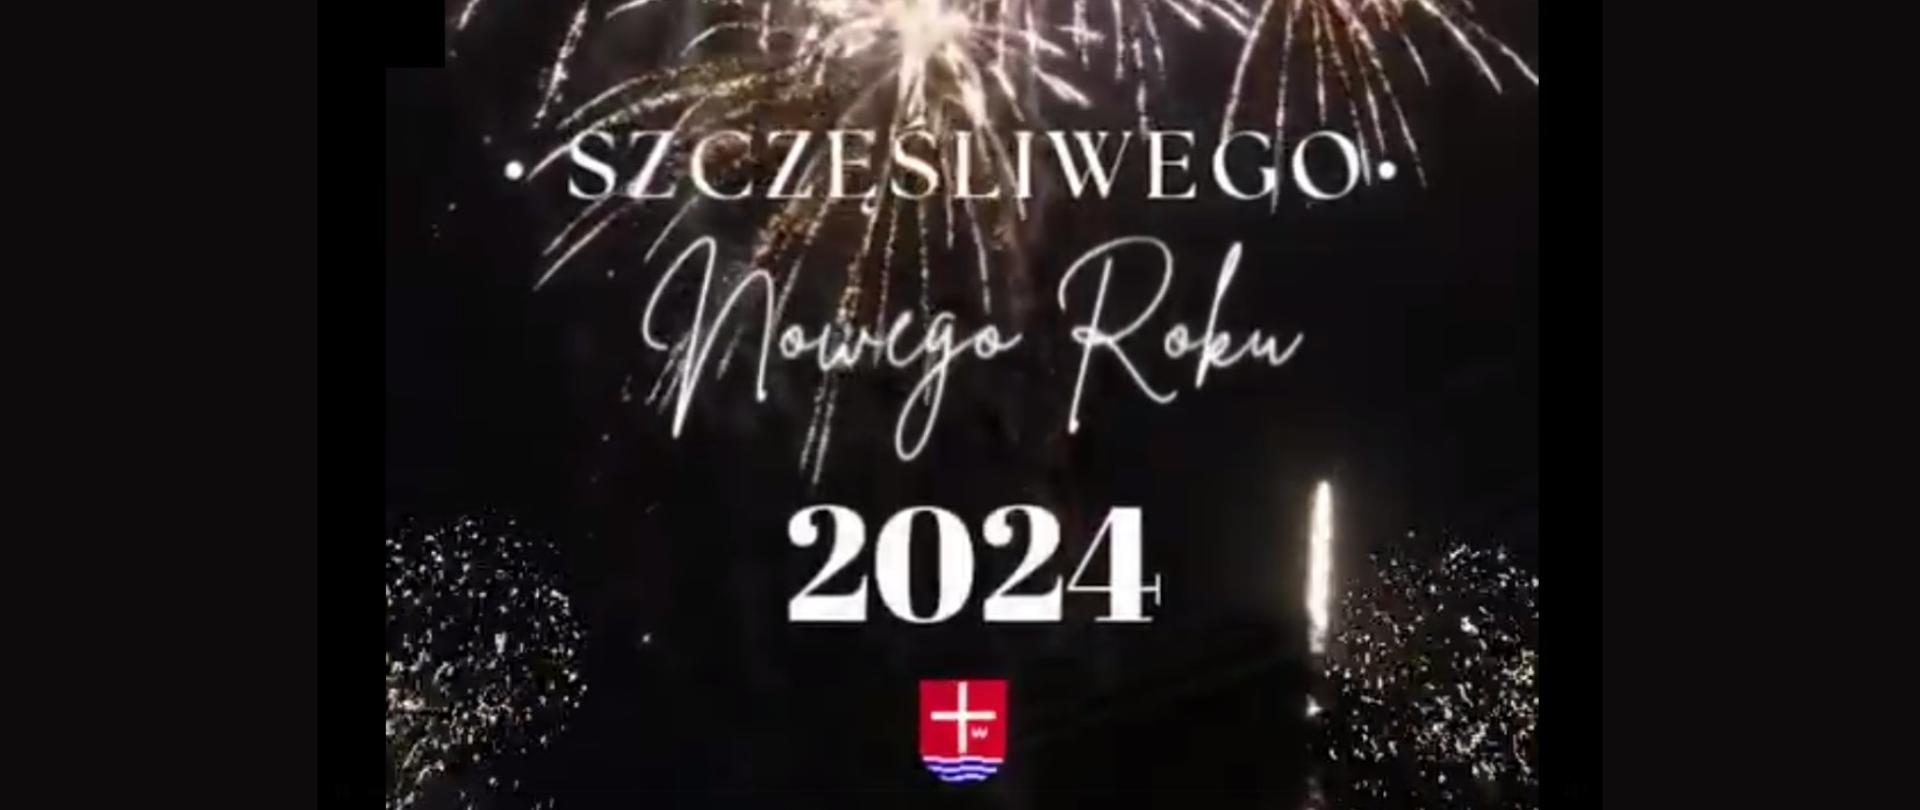 Biały napis "Szczęśliwego Nowego Roku 2024" z herbem powiatu na czarnym tle z rozbłyskami fajerwerków.